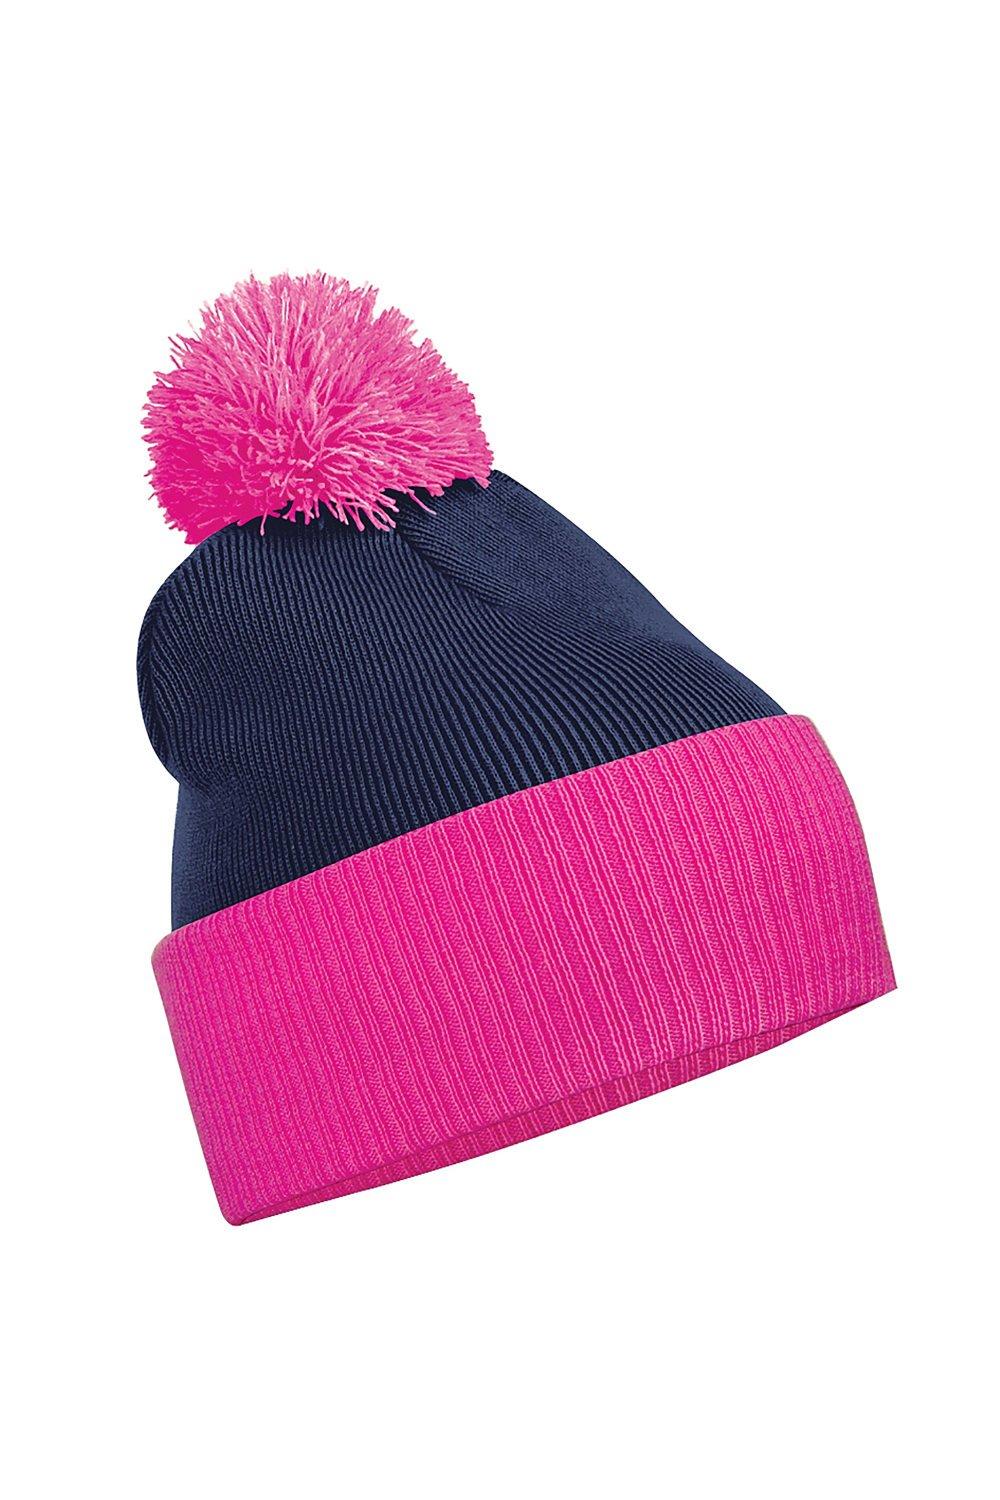 Двухцветная зимняя шапка-бини Snowstar Duo Beechfield, темно-синий